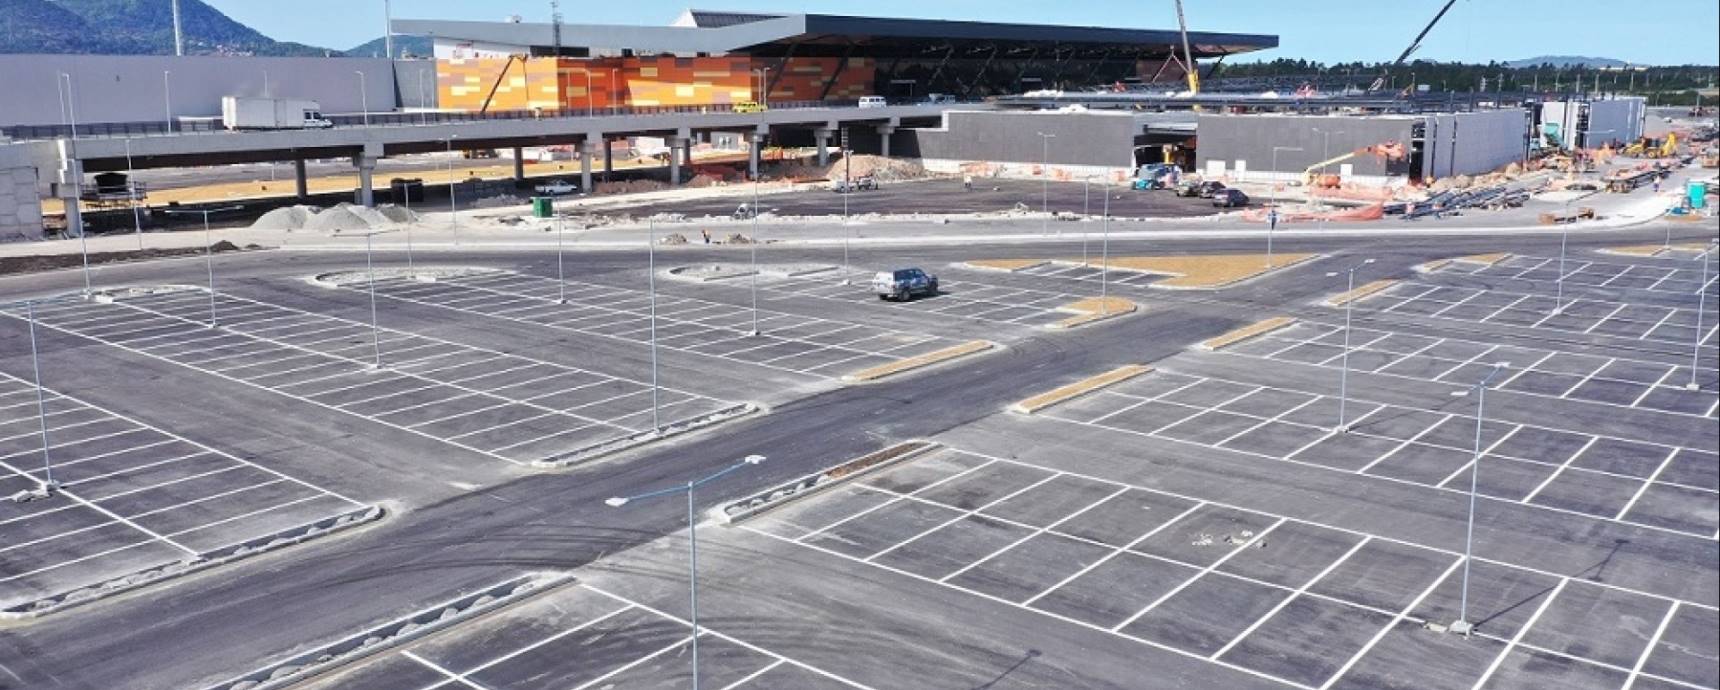 Novo aeroporto de Florianópolis terá estacionamento com preços mais acessíveis. Veja!